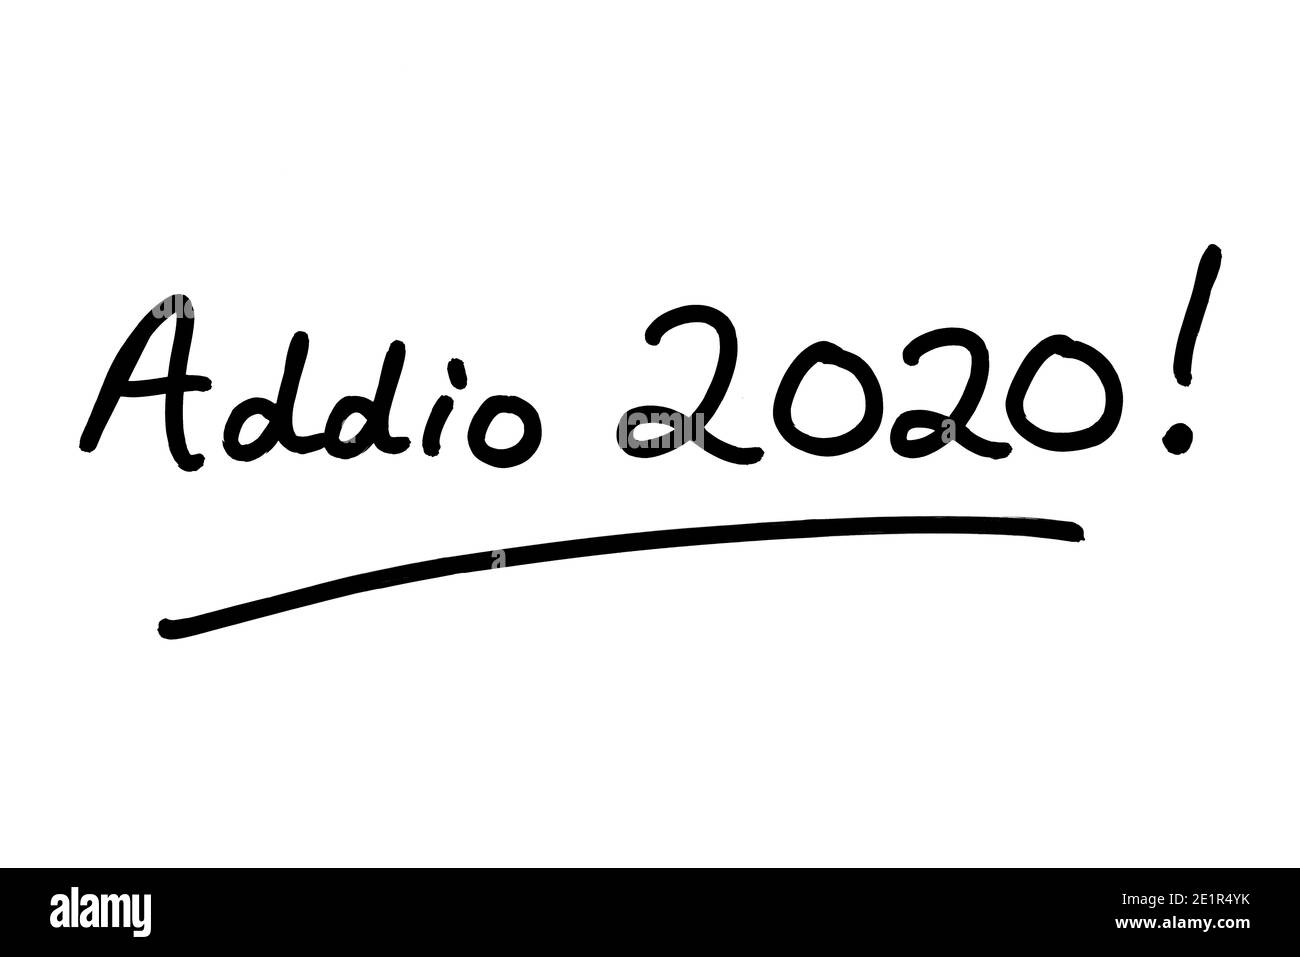 Addio 2020! - Auf Wiedersehen 2020 bedeutet! In italienischer Sprache - handgeschrieben auf weißem Hintergrund. Stockfoto